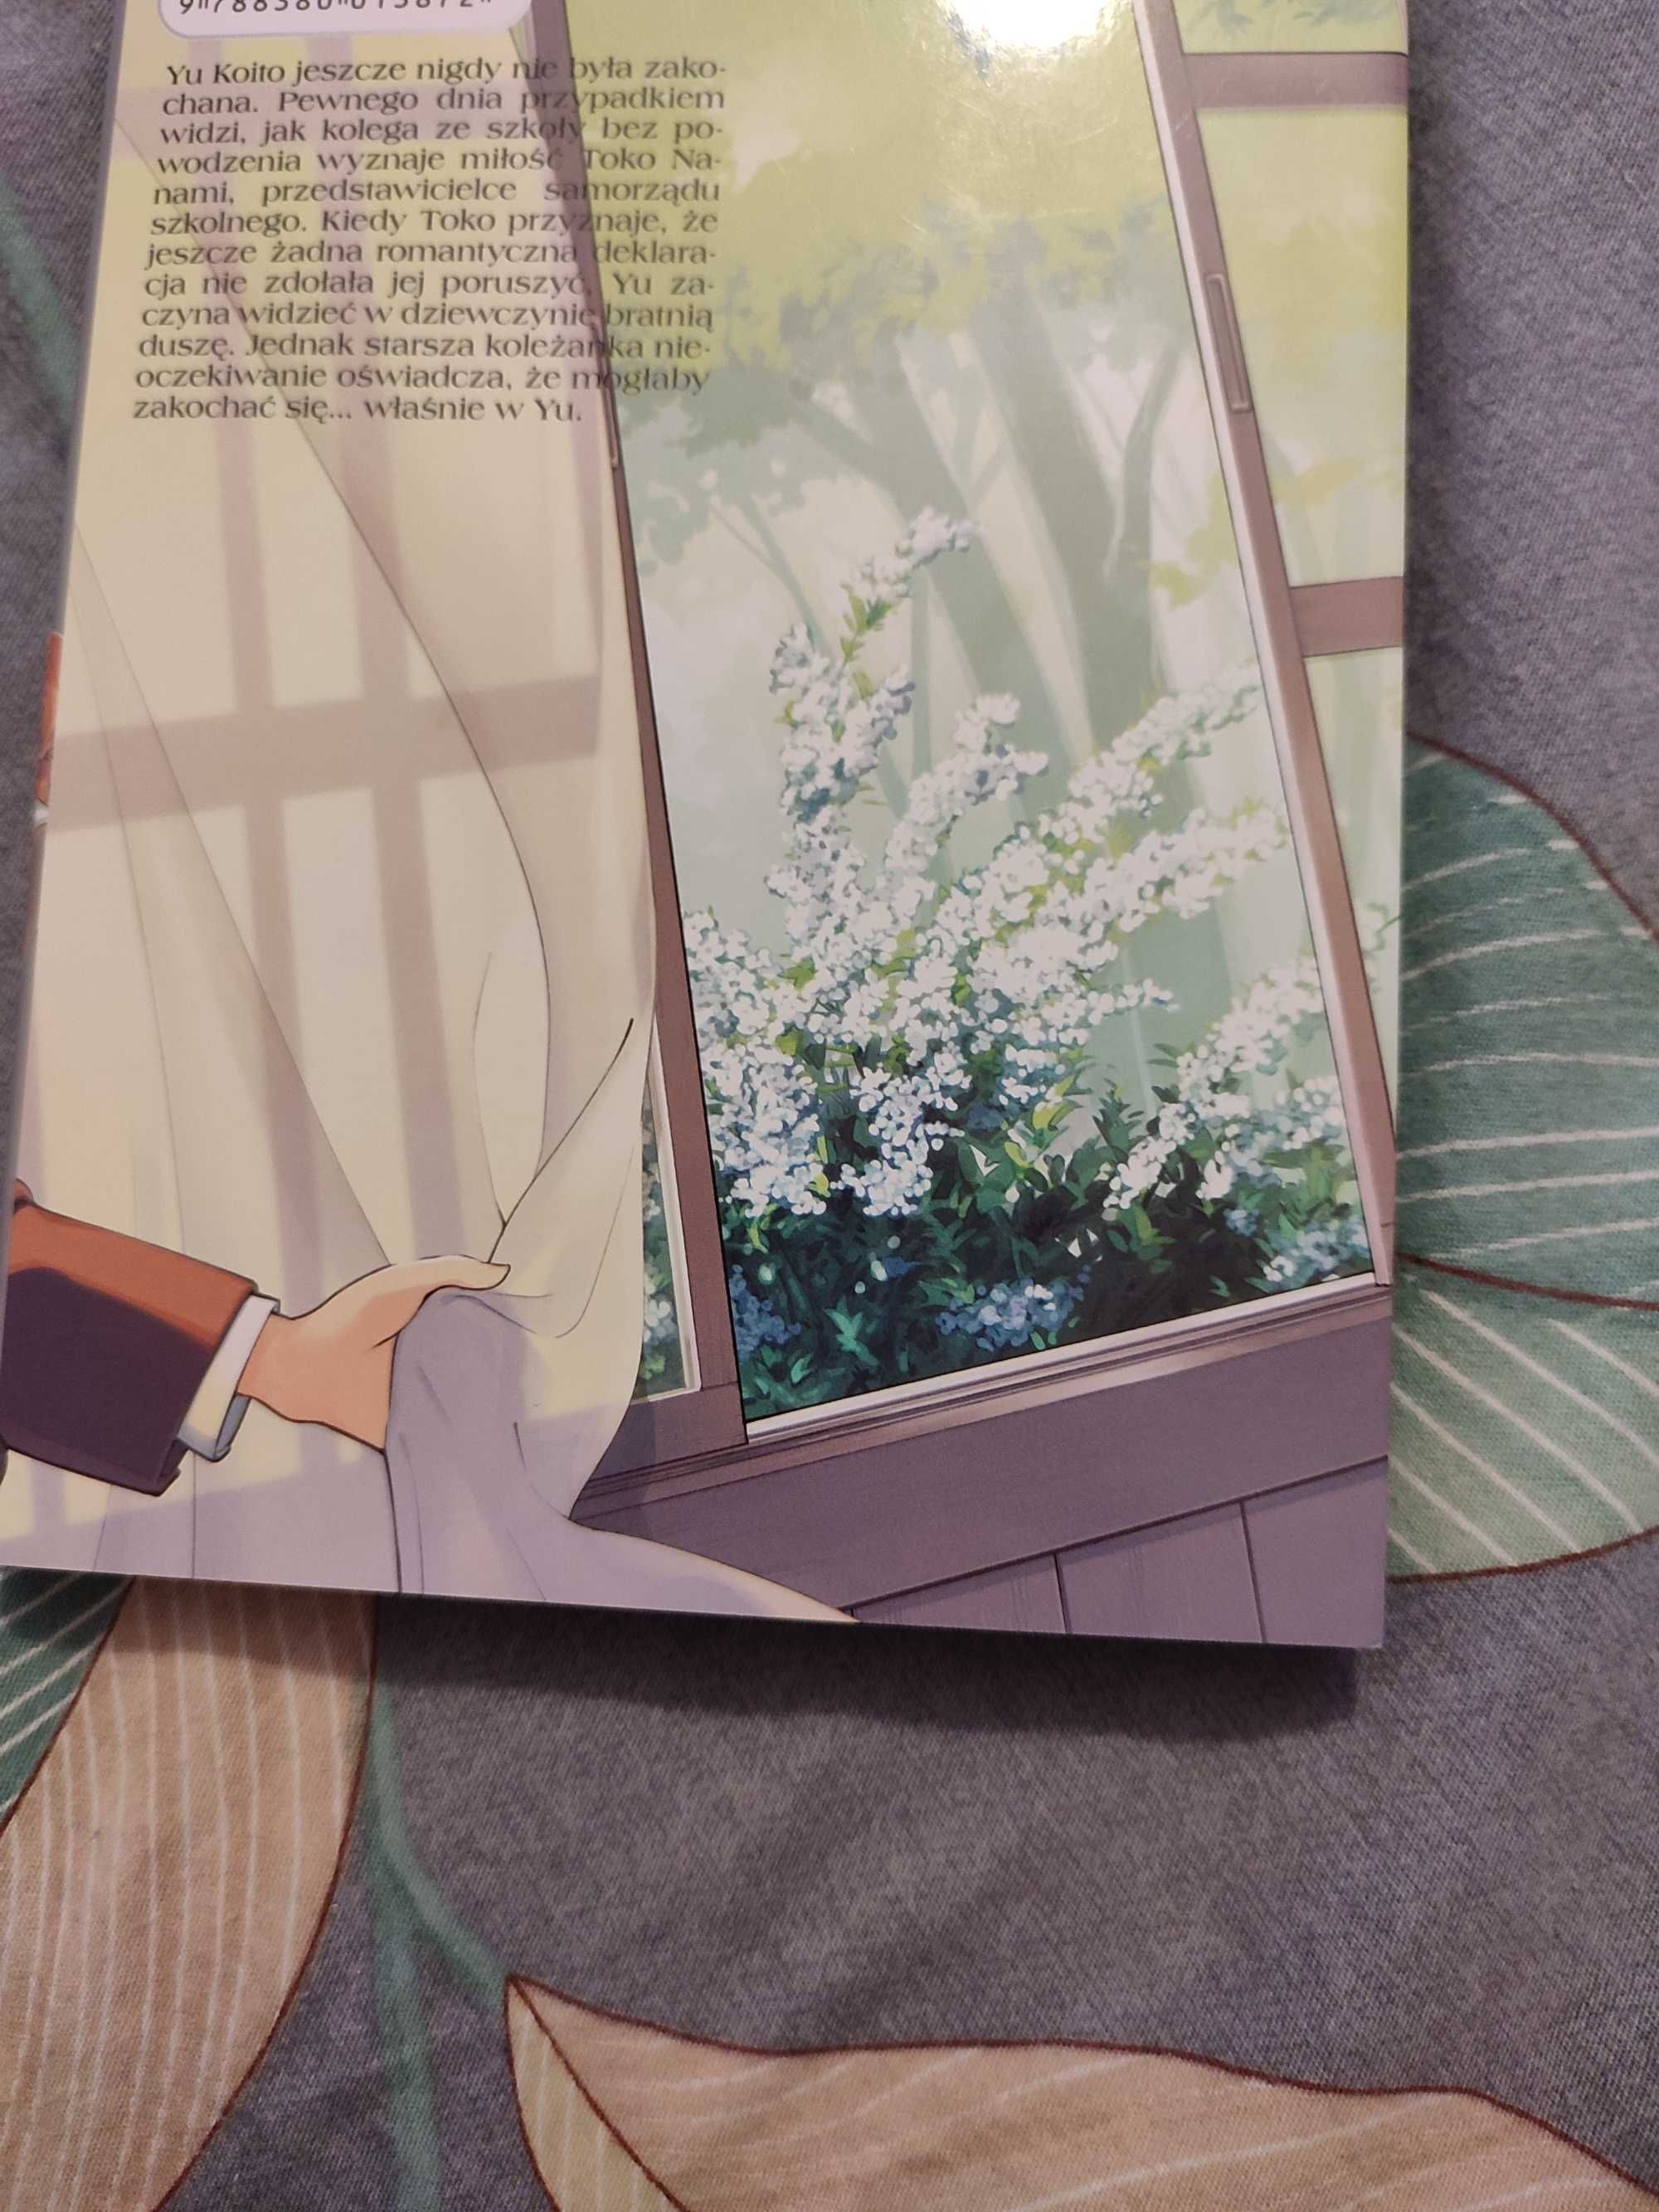 Manga gdy zakwitnie w nas miłość (Yuri)